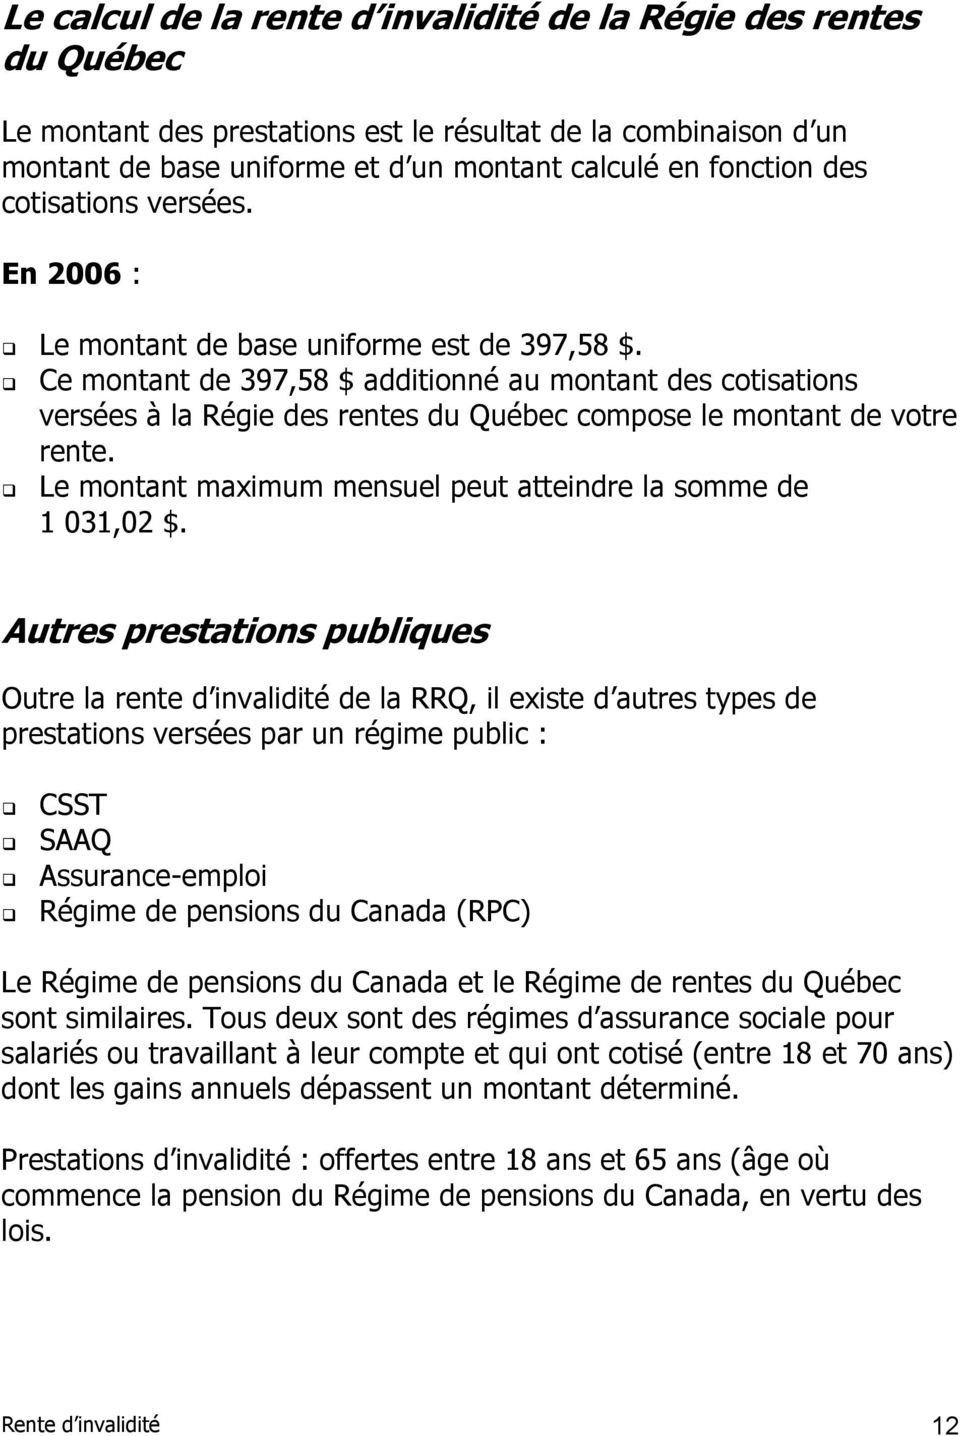 Ce montant de 397,58 $ additionné au montant des cotisations versées à la Régie des rentes du Québec compose le montant de votre rente.